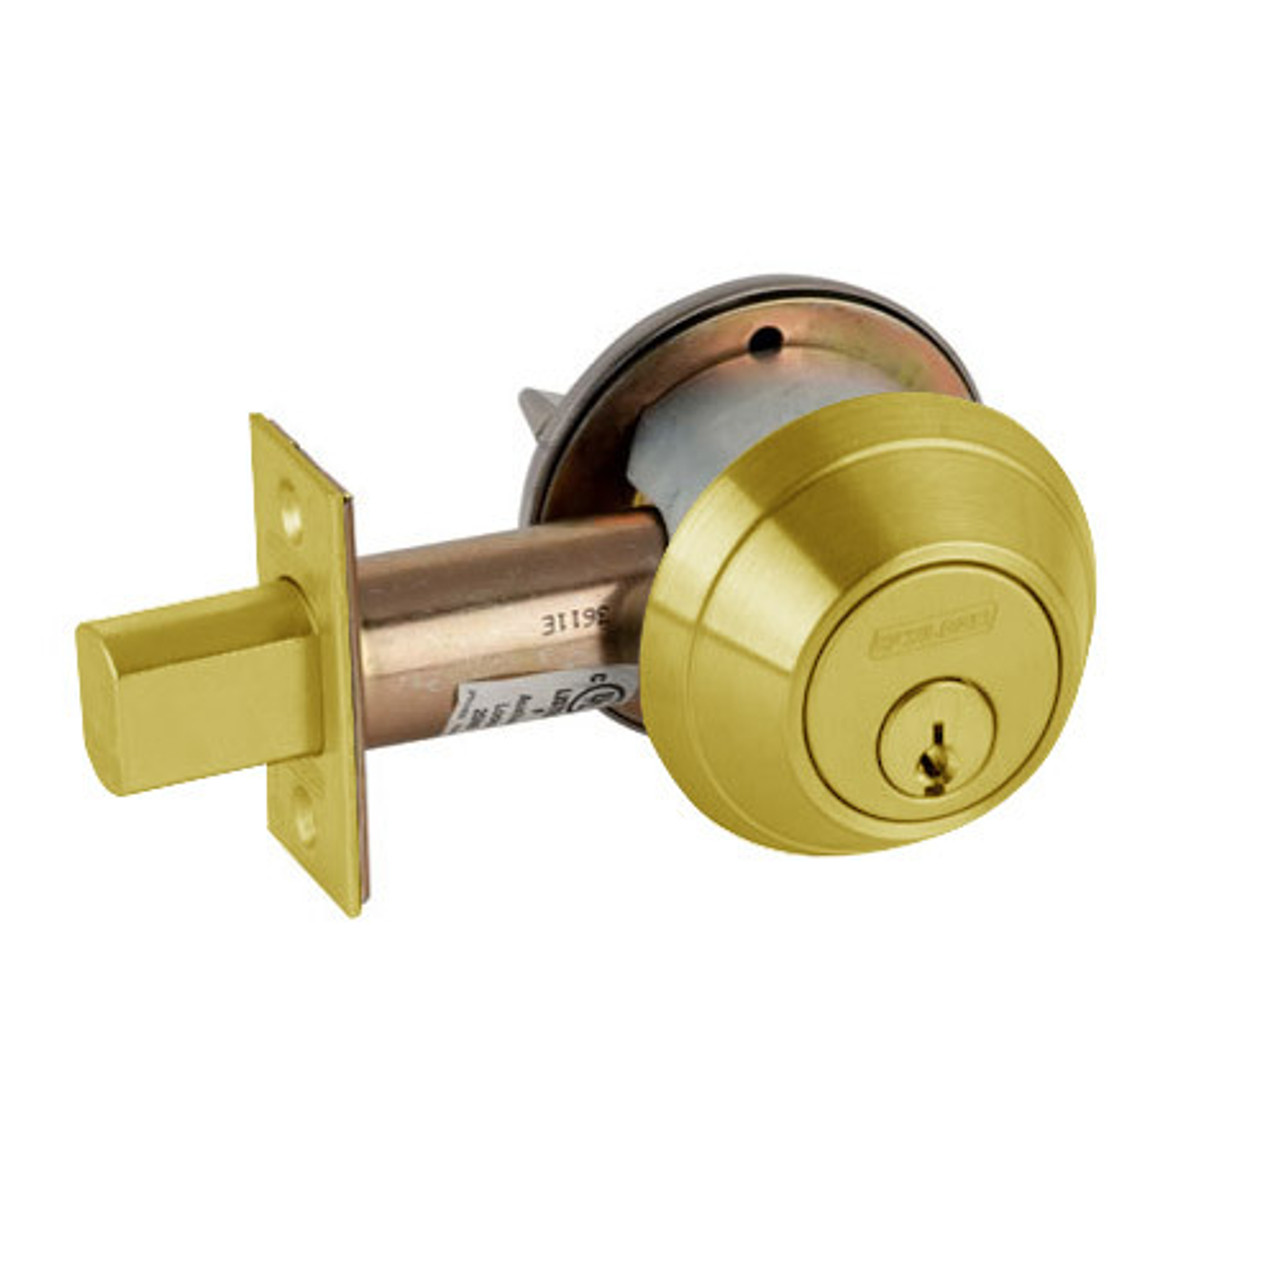 B663P-605 Schlage B660 Bored Deadbolt Locks in Bright Brass